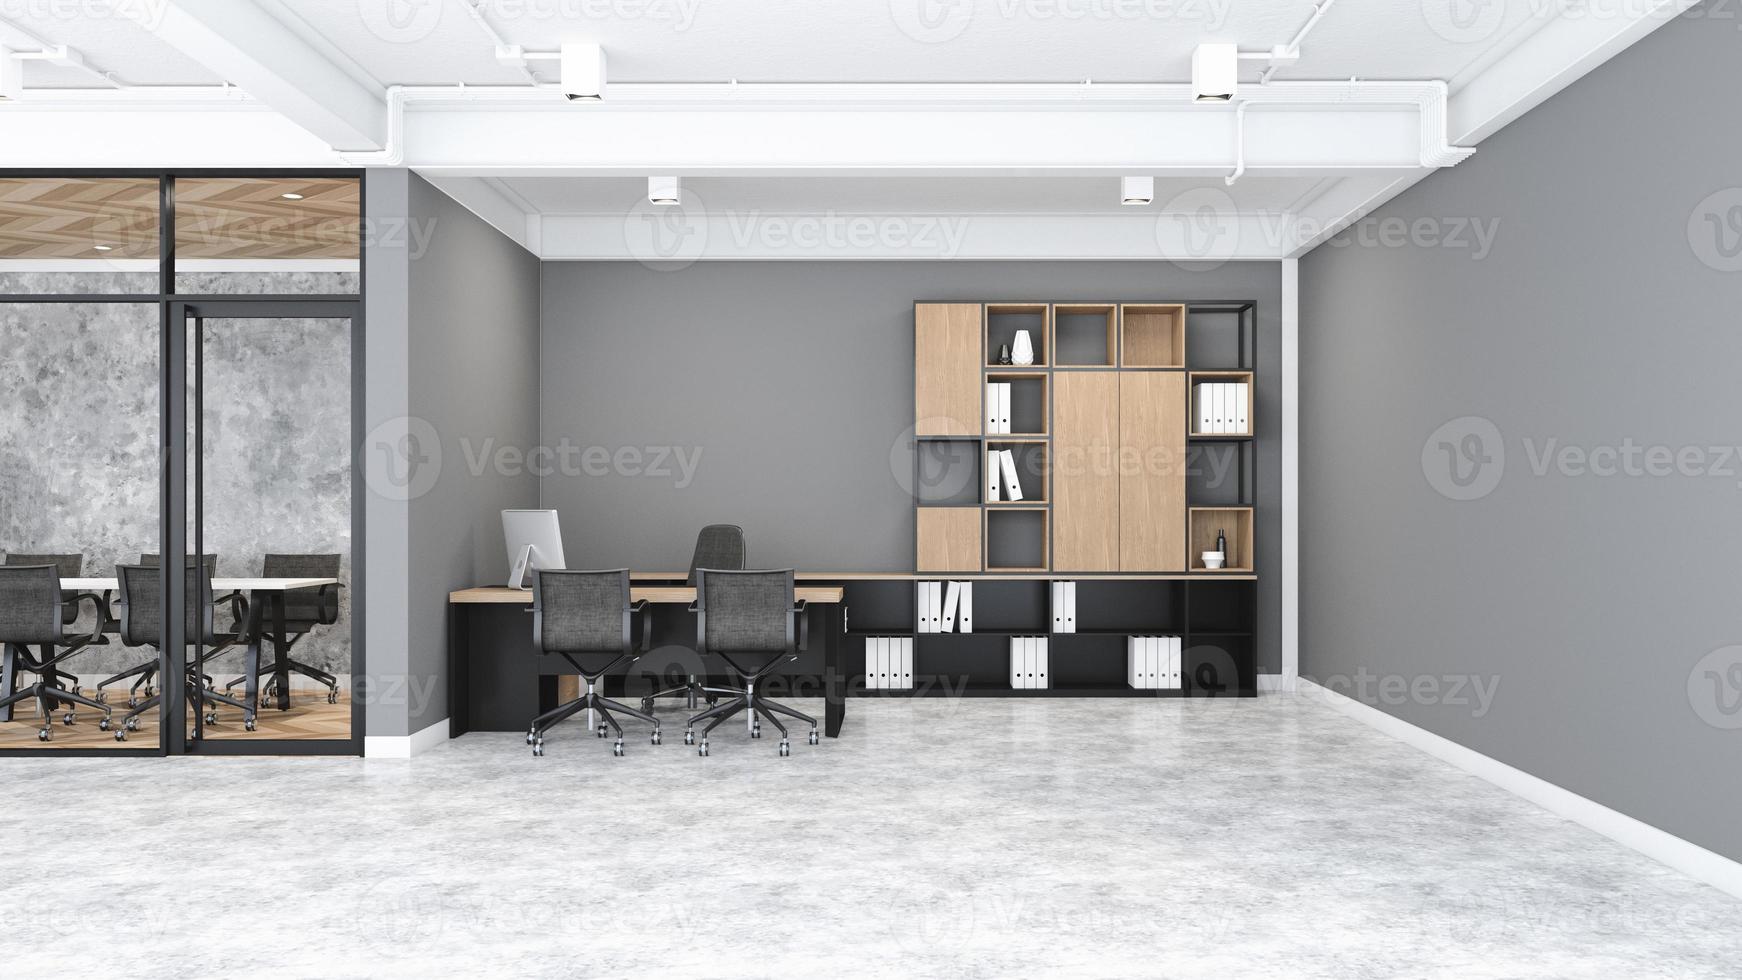 minimalistische loftmanager met modern bureau en documentplank, grijze muur en betonnen vloer. 3D-rendering foto